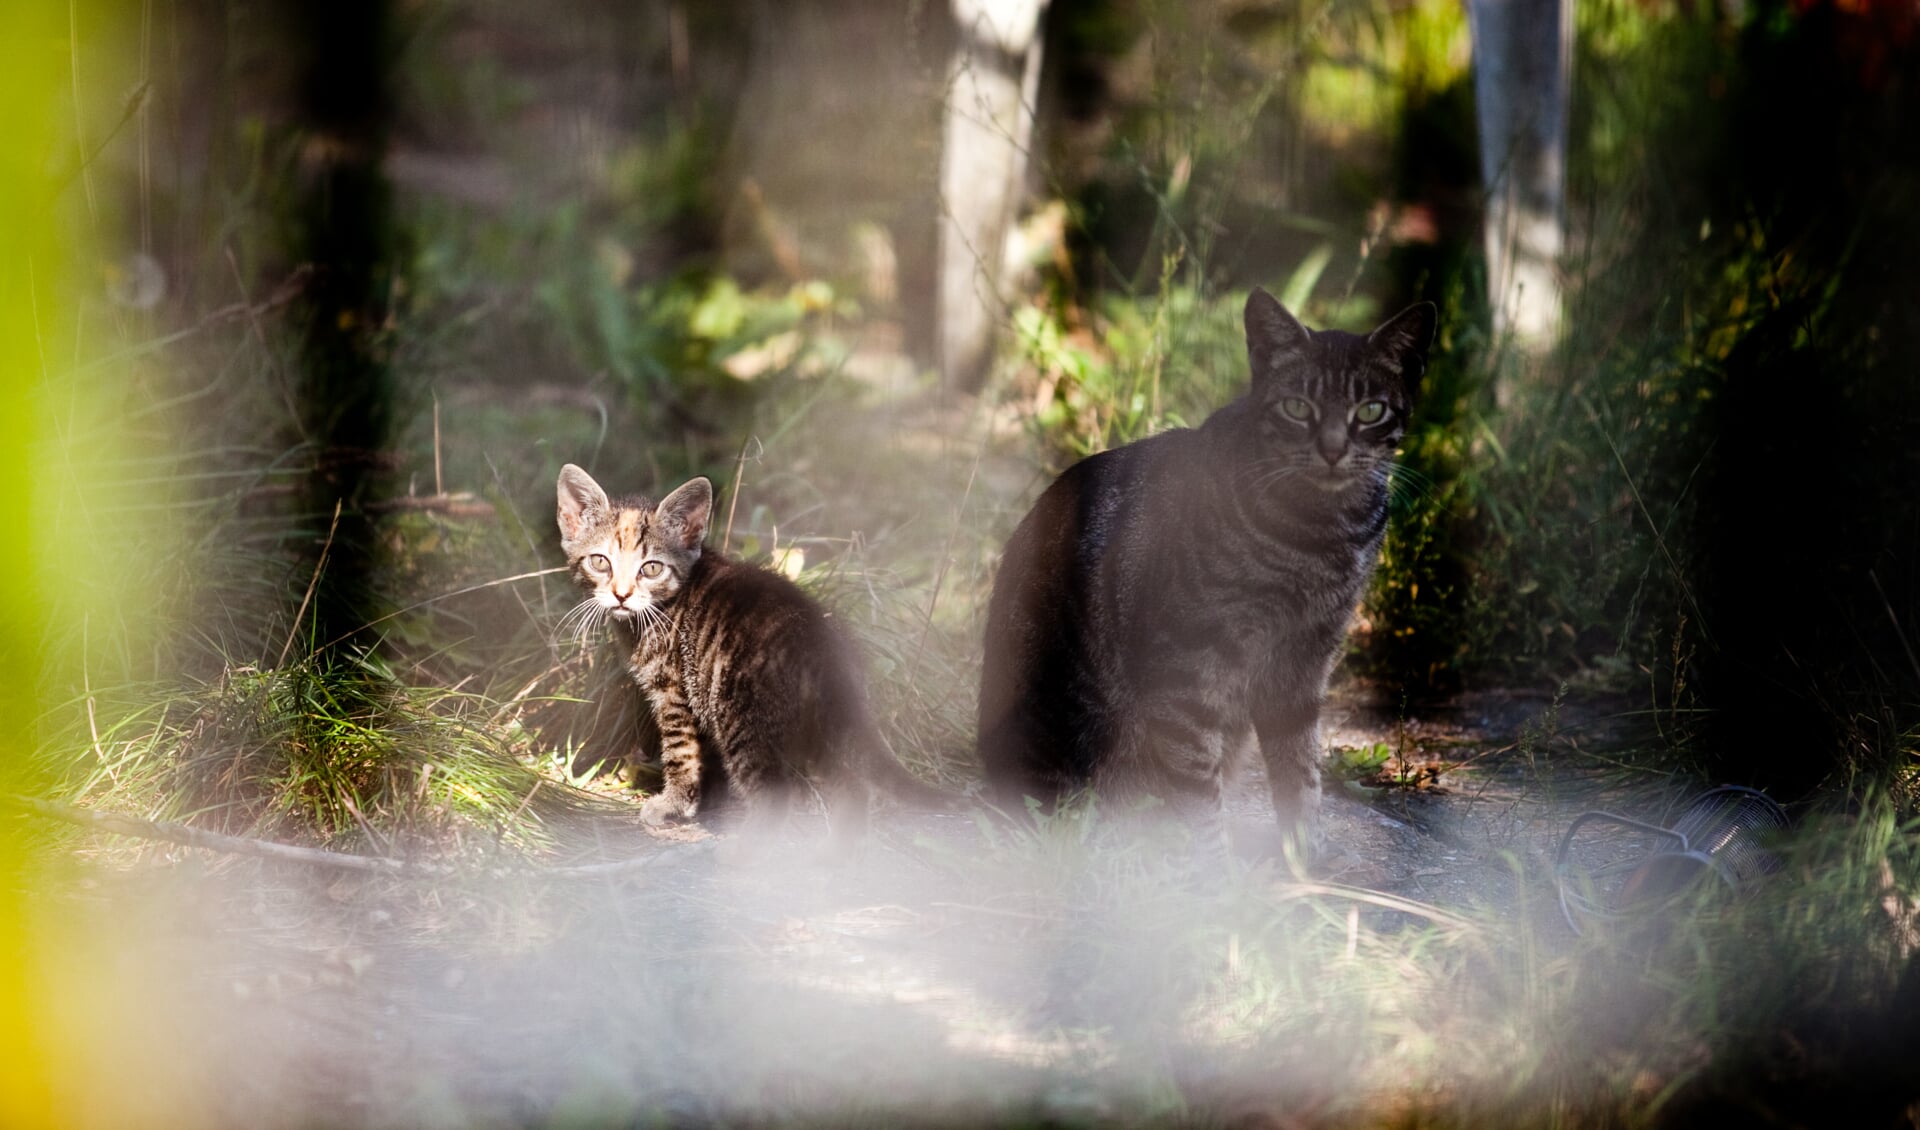 Verwilderde katten in een tuin aan de Aetsveldselaan 